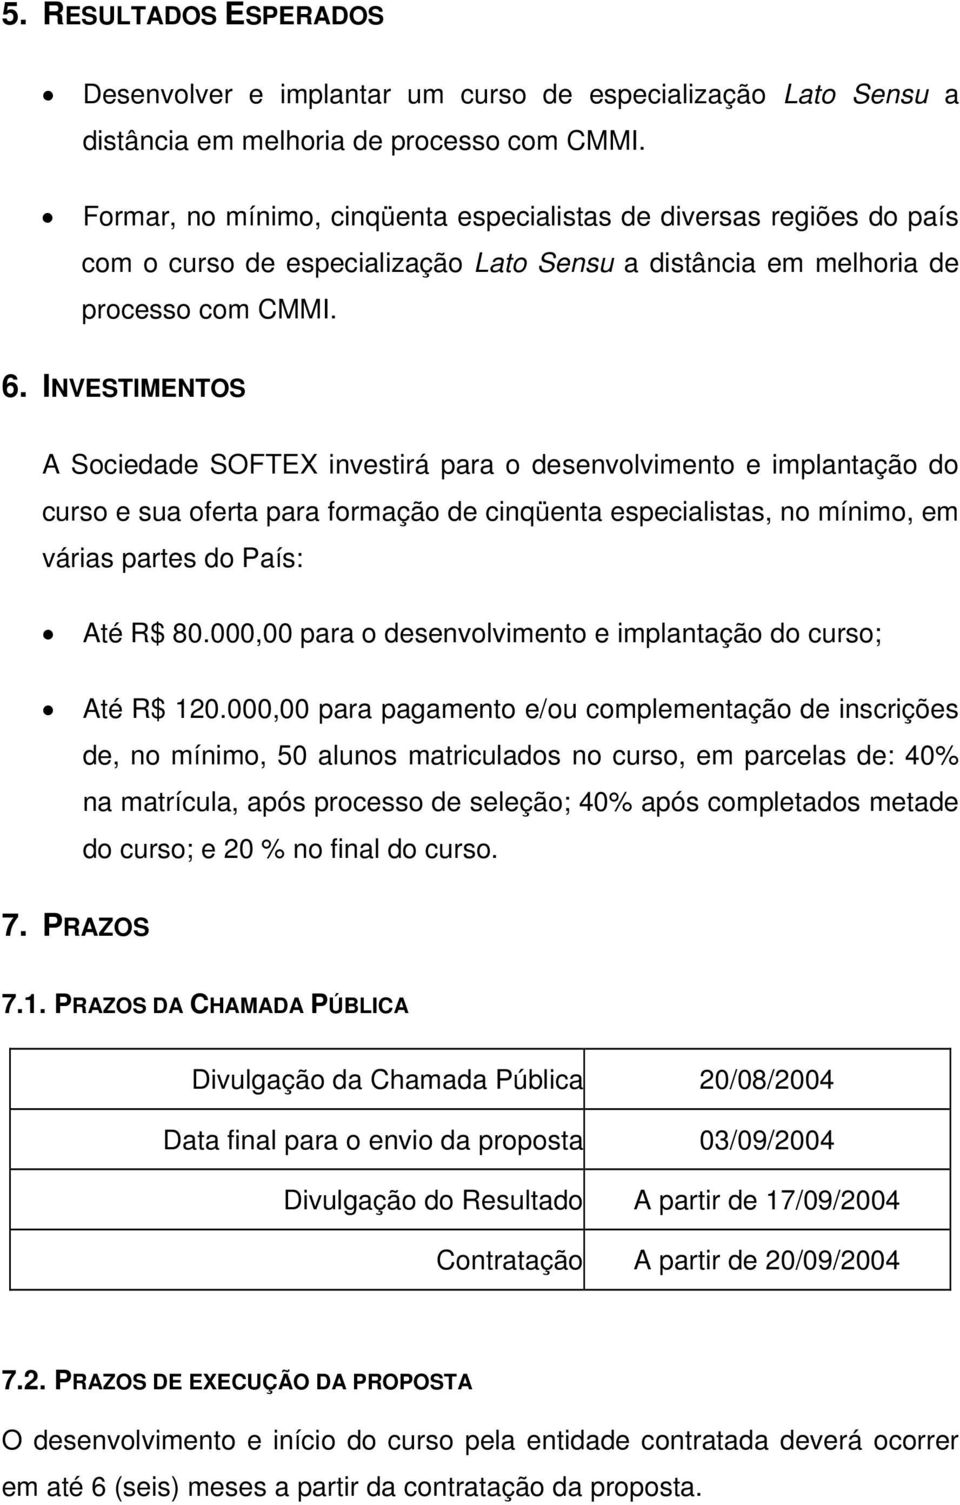 INVESTIMENTOS A Sociedade SOFTEX investirá para o desenvolvimento e implantação do curso e sua oferta para formação de cinqüenta especialistas, no mínimo, em várias partes do País: Até R$ 80.